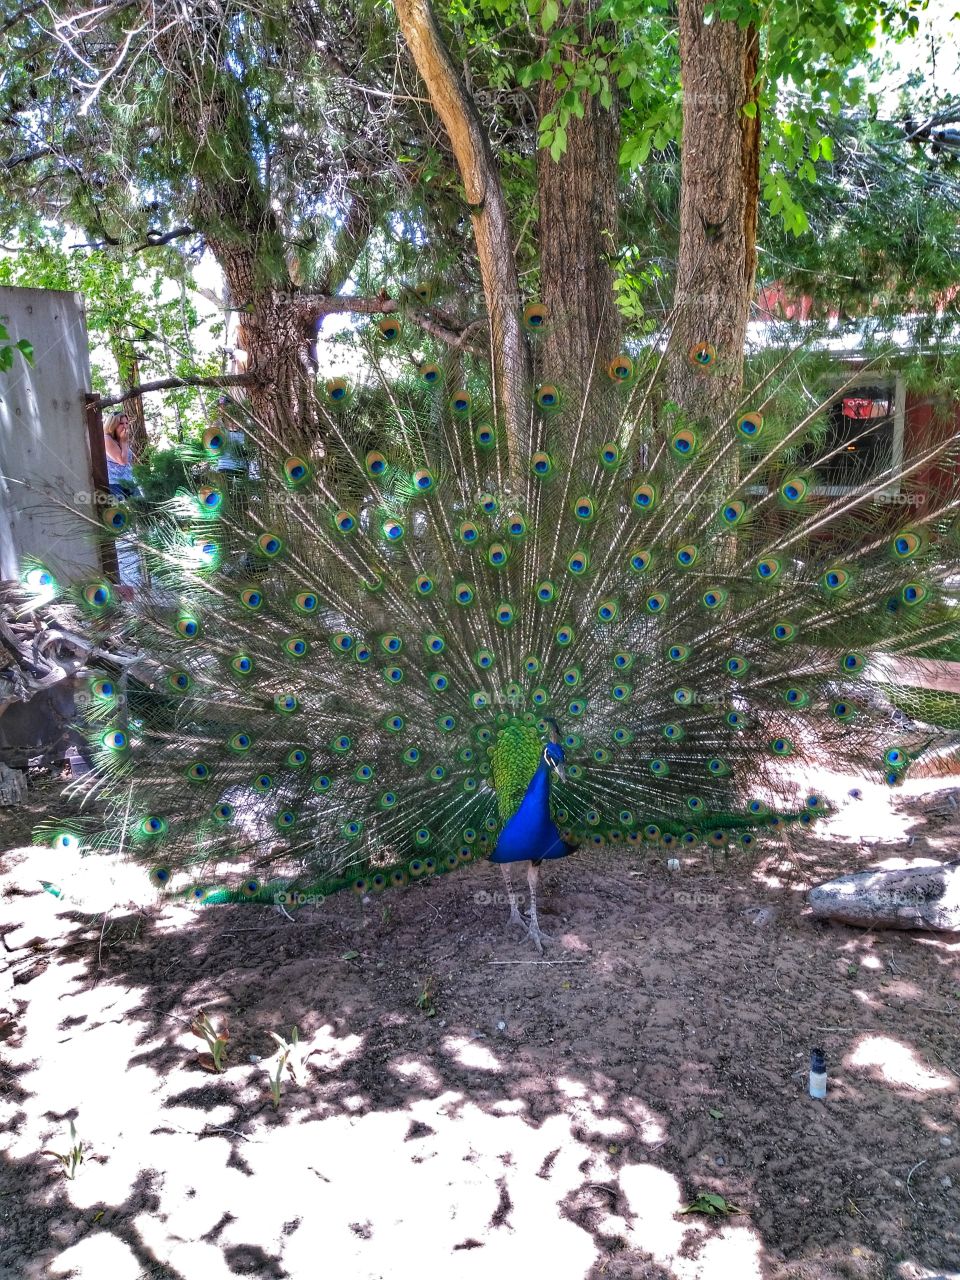 peacock in the desert